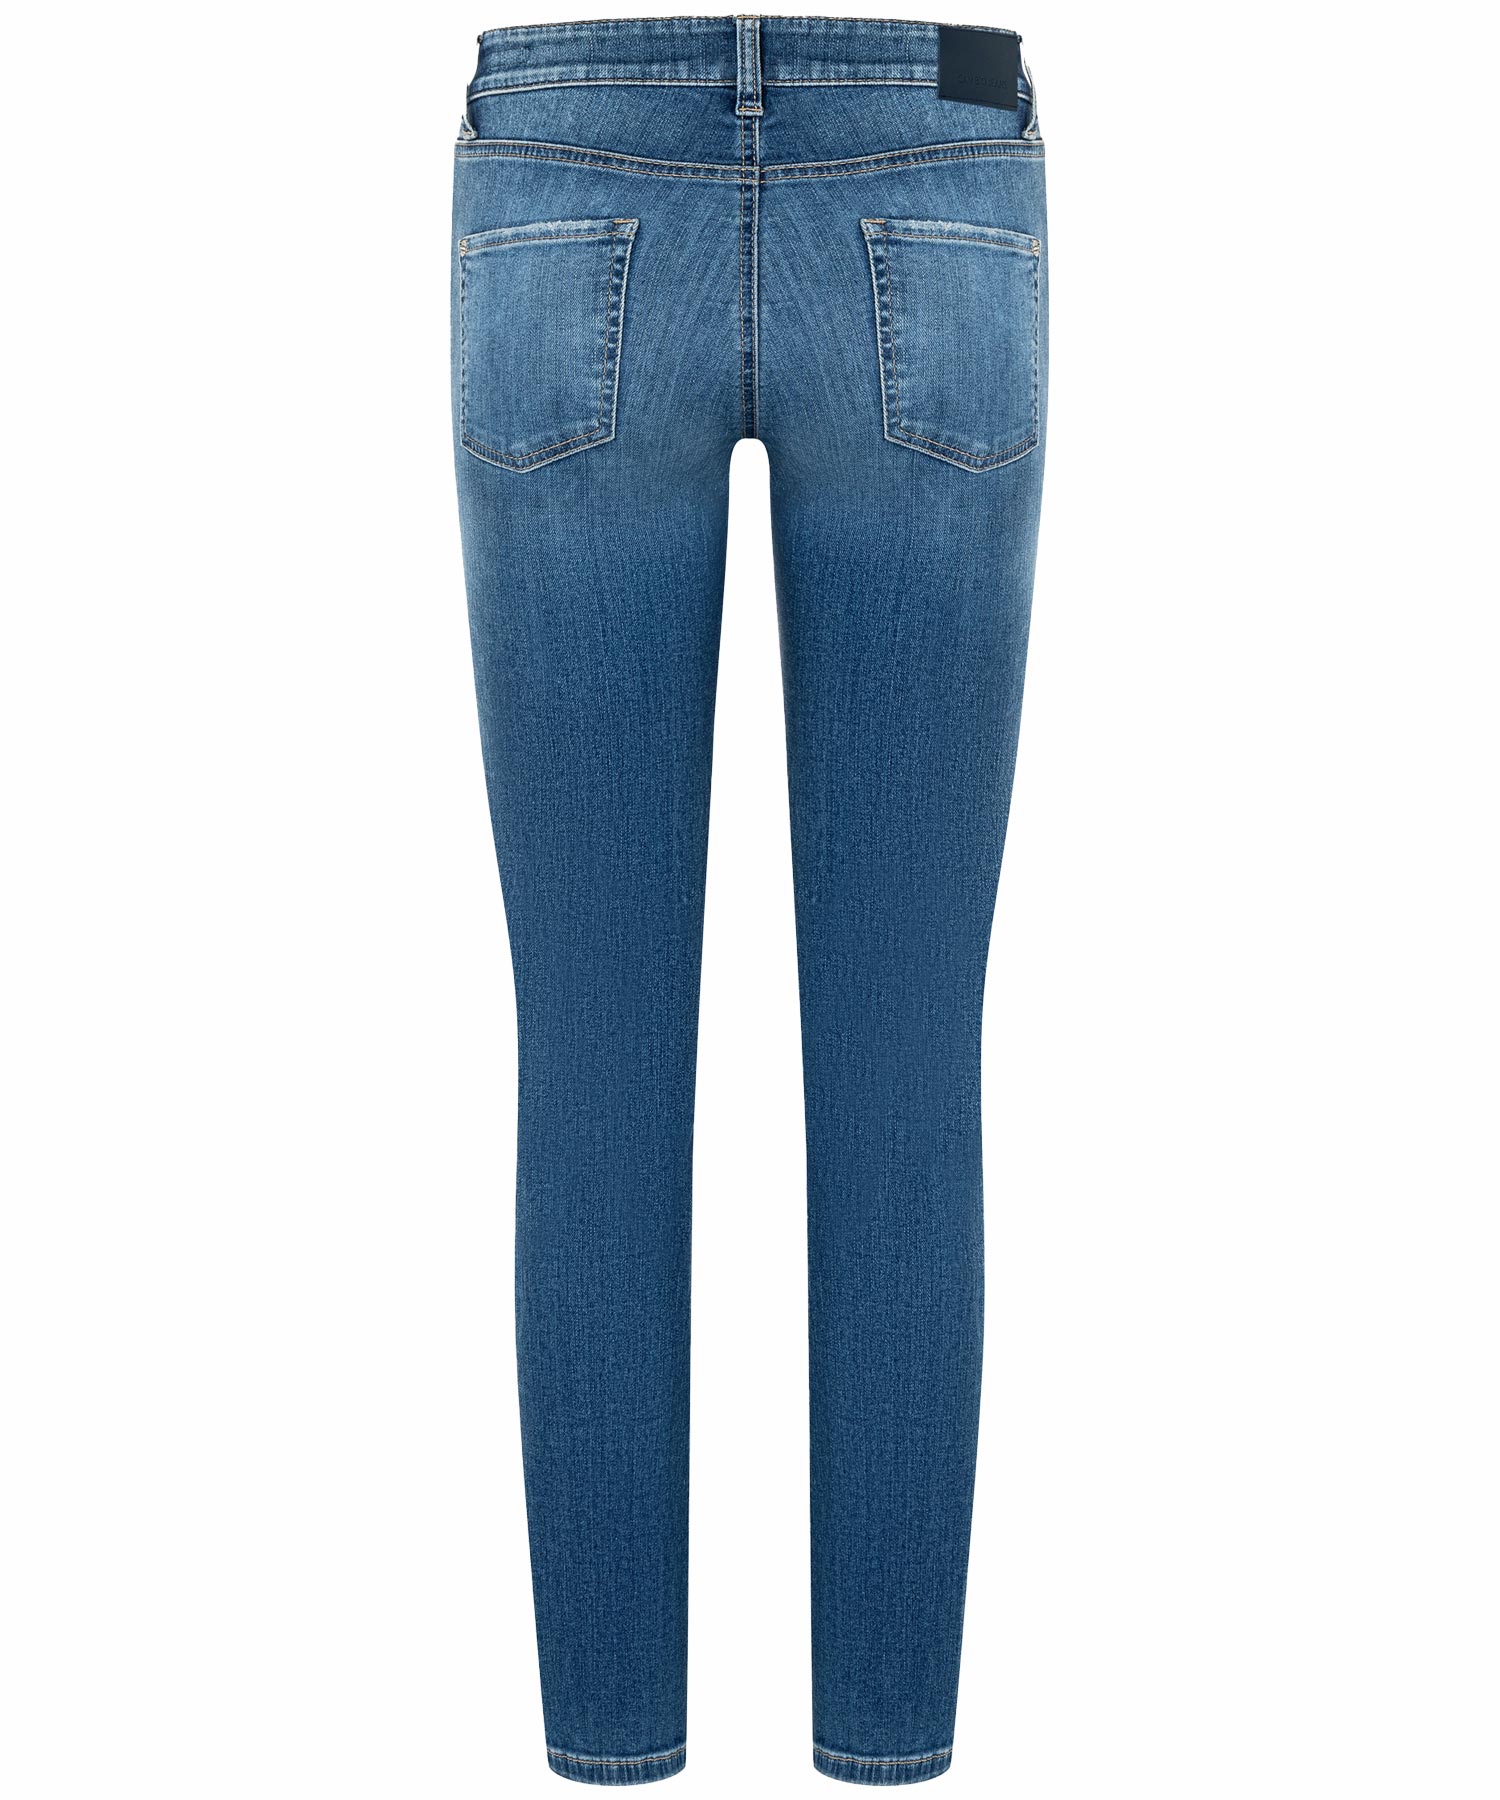 Cambio Jeans Piper in blue